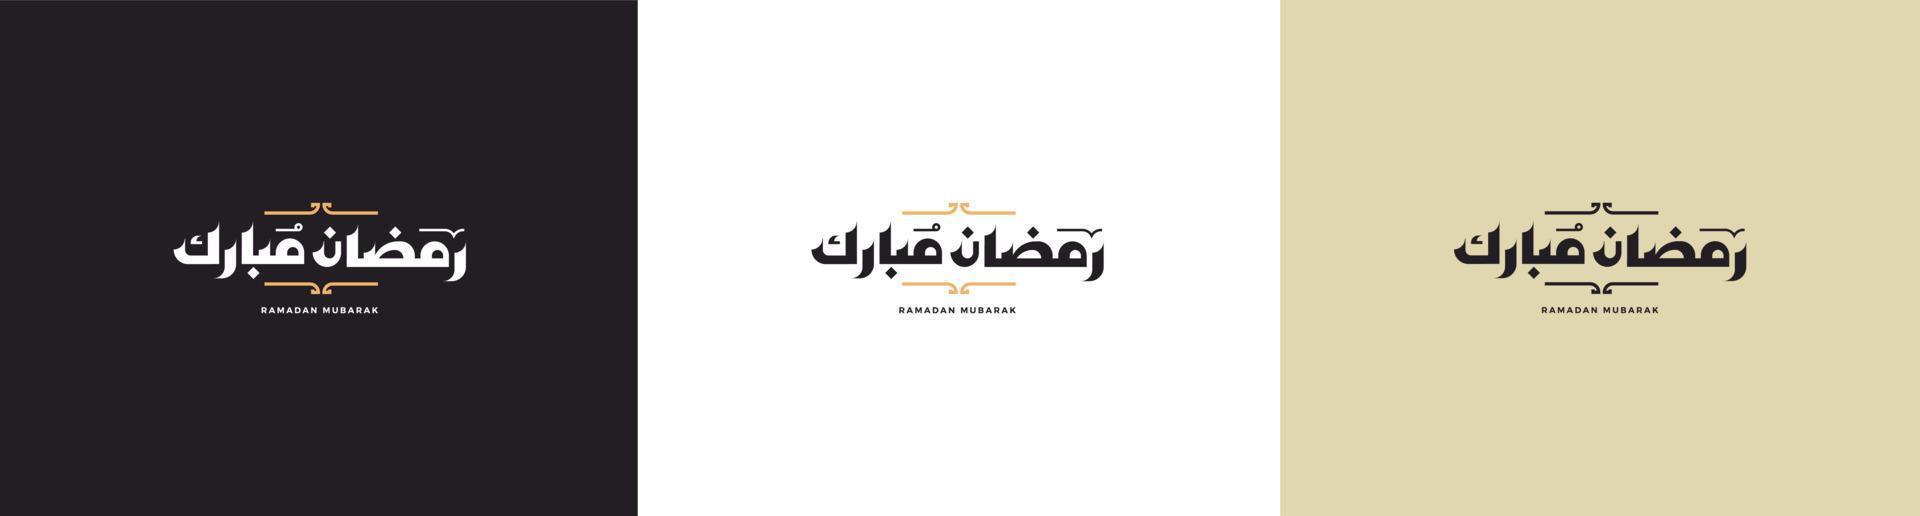 ramadán kareem. Ramadán Mubarak. traducido feliz, sagrado ramadán. mes de ayuno para los musulmanes. tipografía árabe. vector